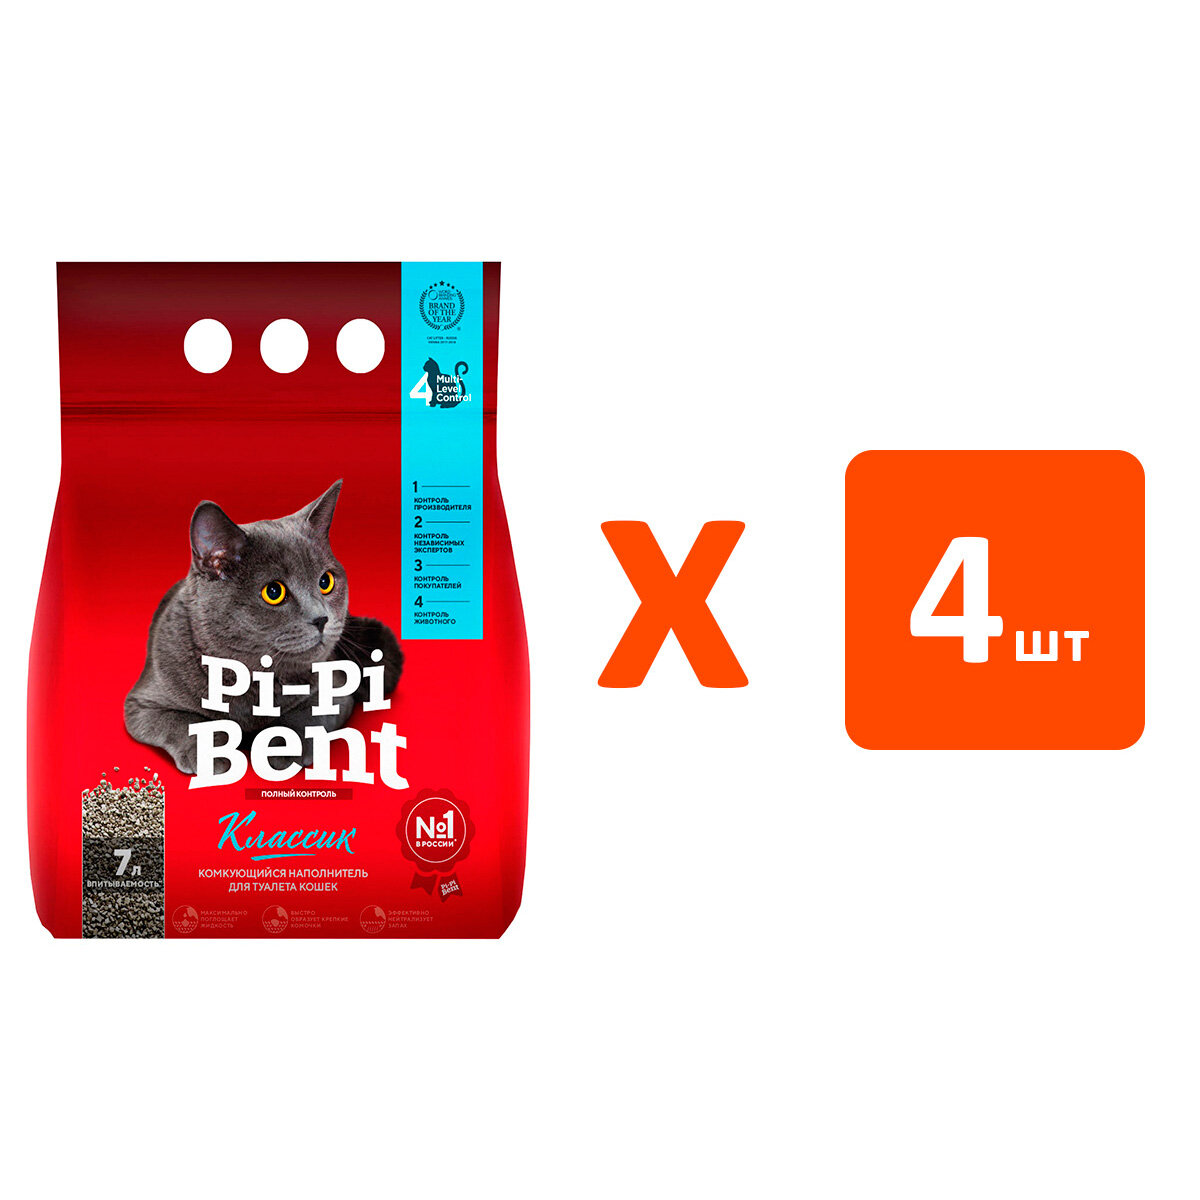 PI-PI BENT классик – Пи-Пи-Бент наполнитель комкующийся для туалета кошек (3 кг х 4 шт)